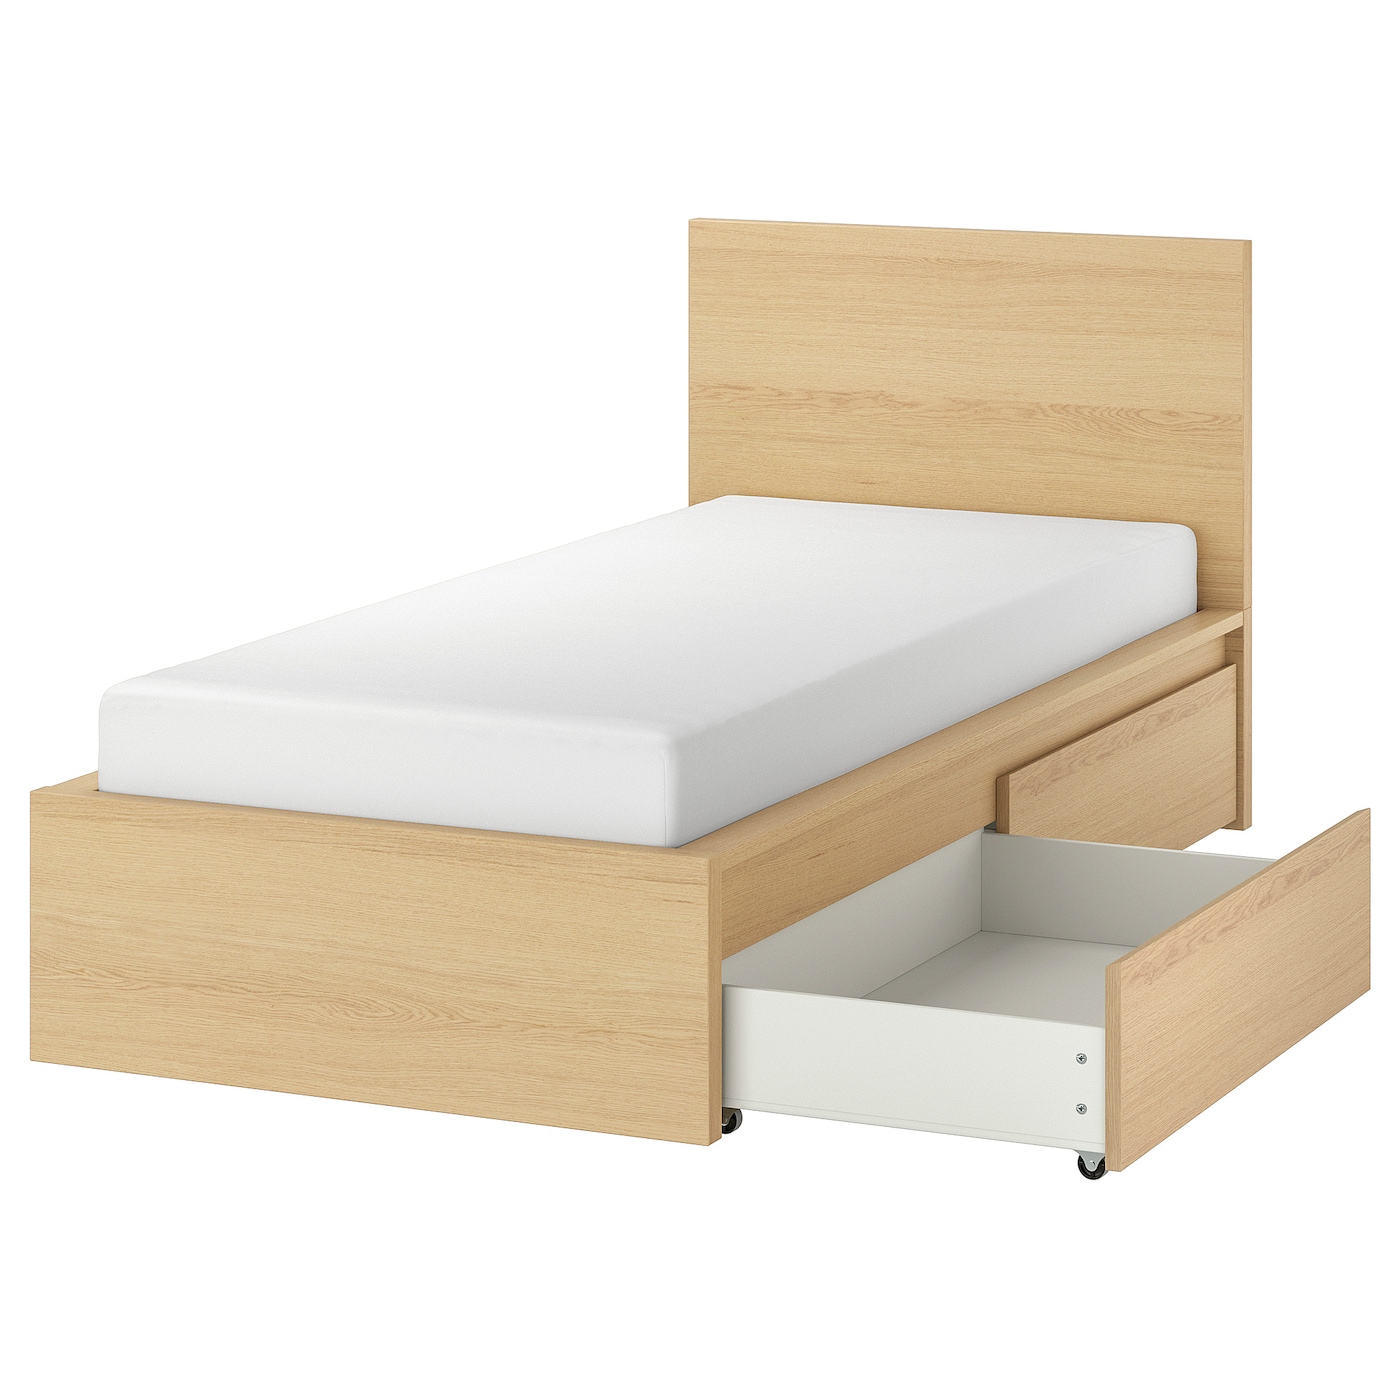 Каркас кровати с 2 ящиками для хранения - IKEA MALM/LÖNSET/LONSET, 200х90 см, под беленый дуб, МАЛЬМ/ЛОНСЕТ ИКЕА